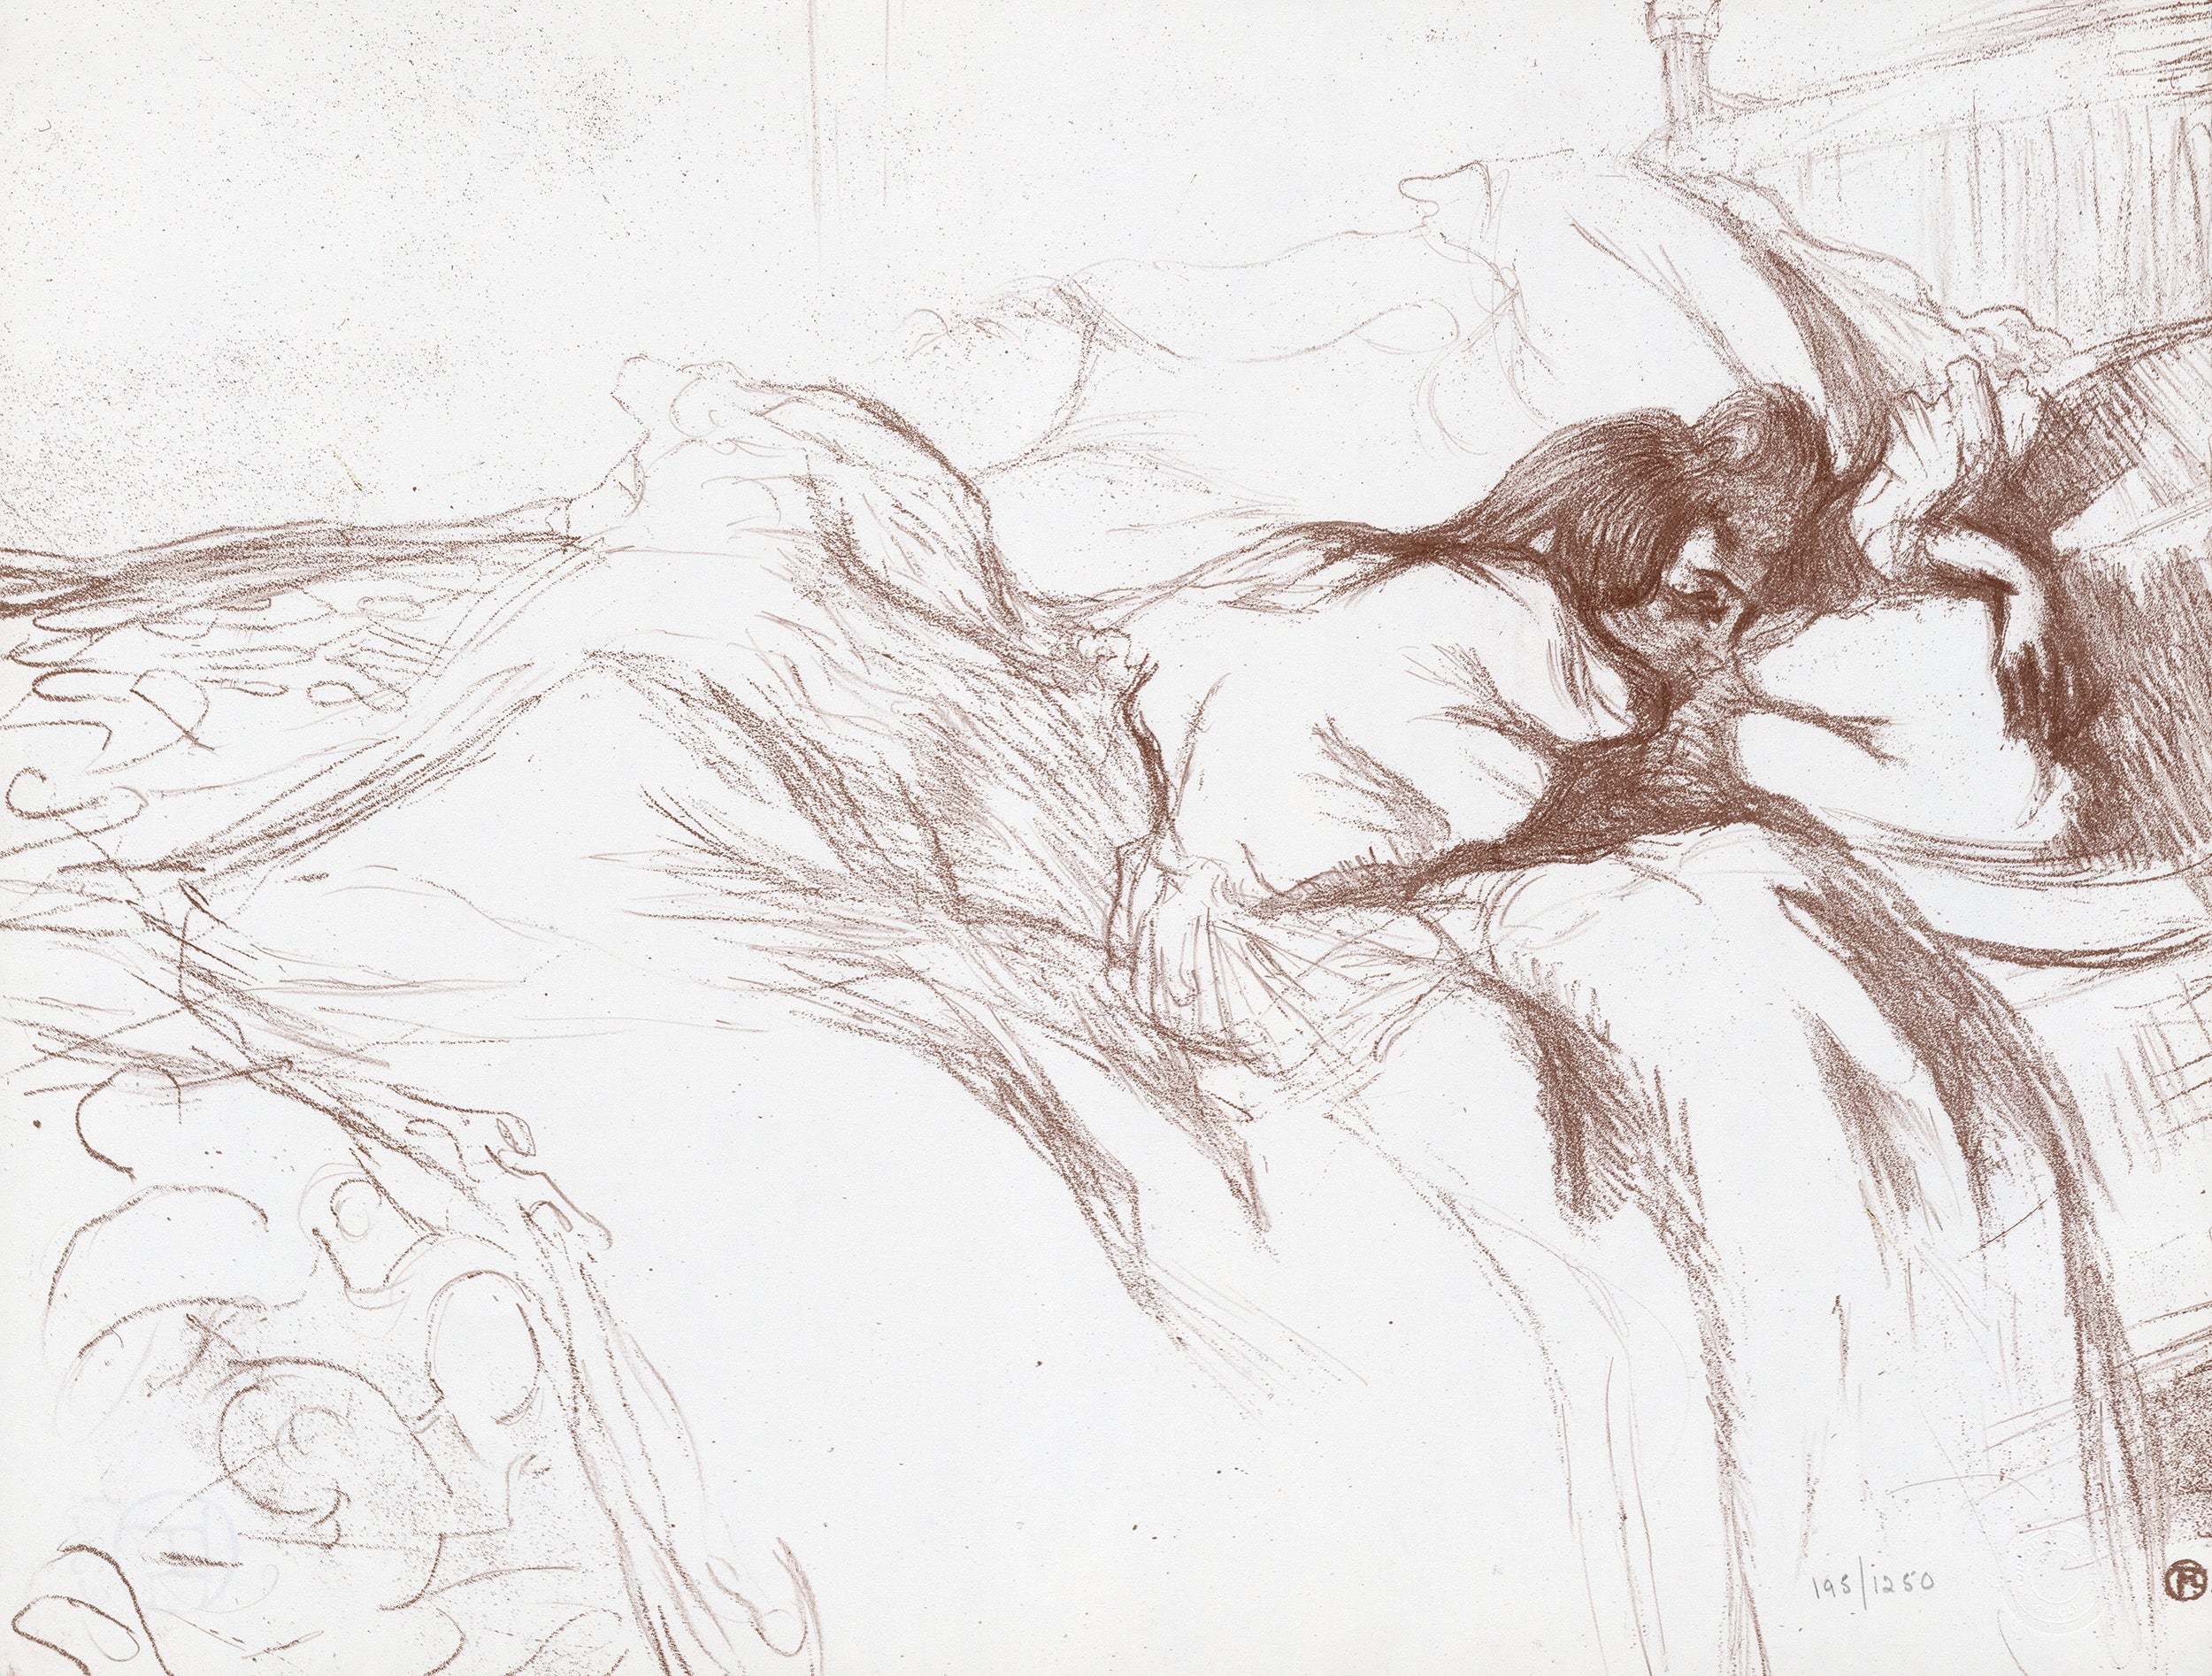 Femme couchée, Elles, 1969, by Henri de Toulouse-Lautrec